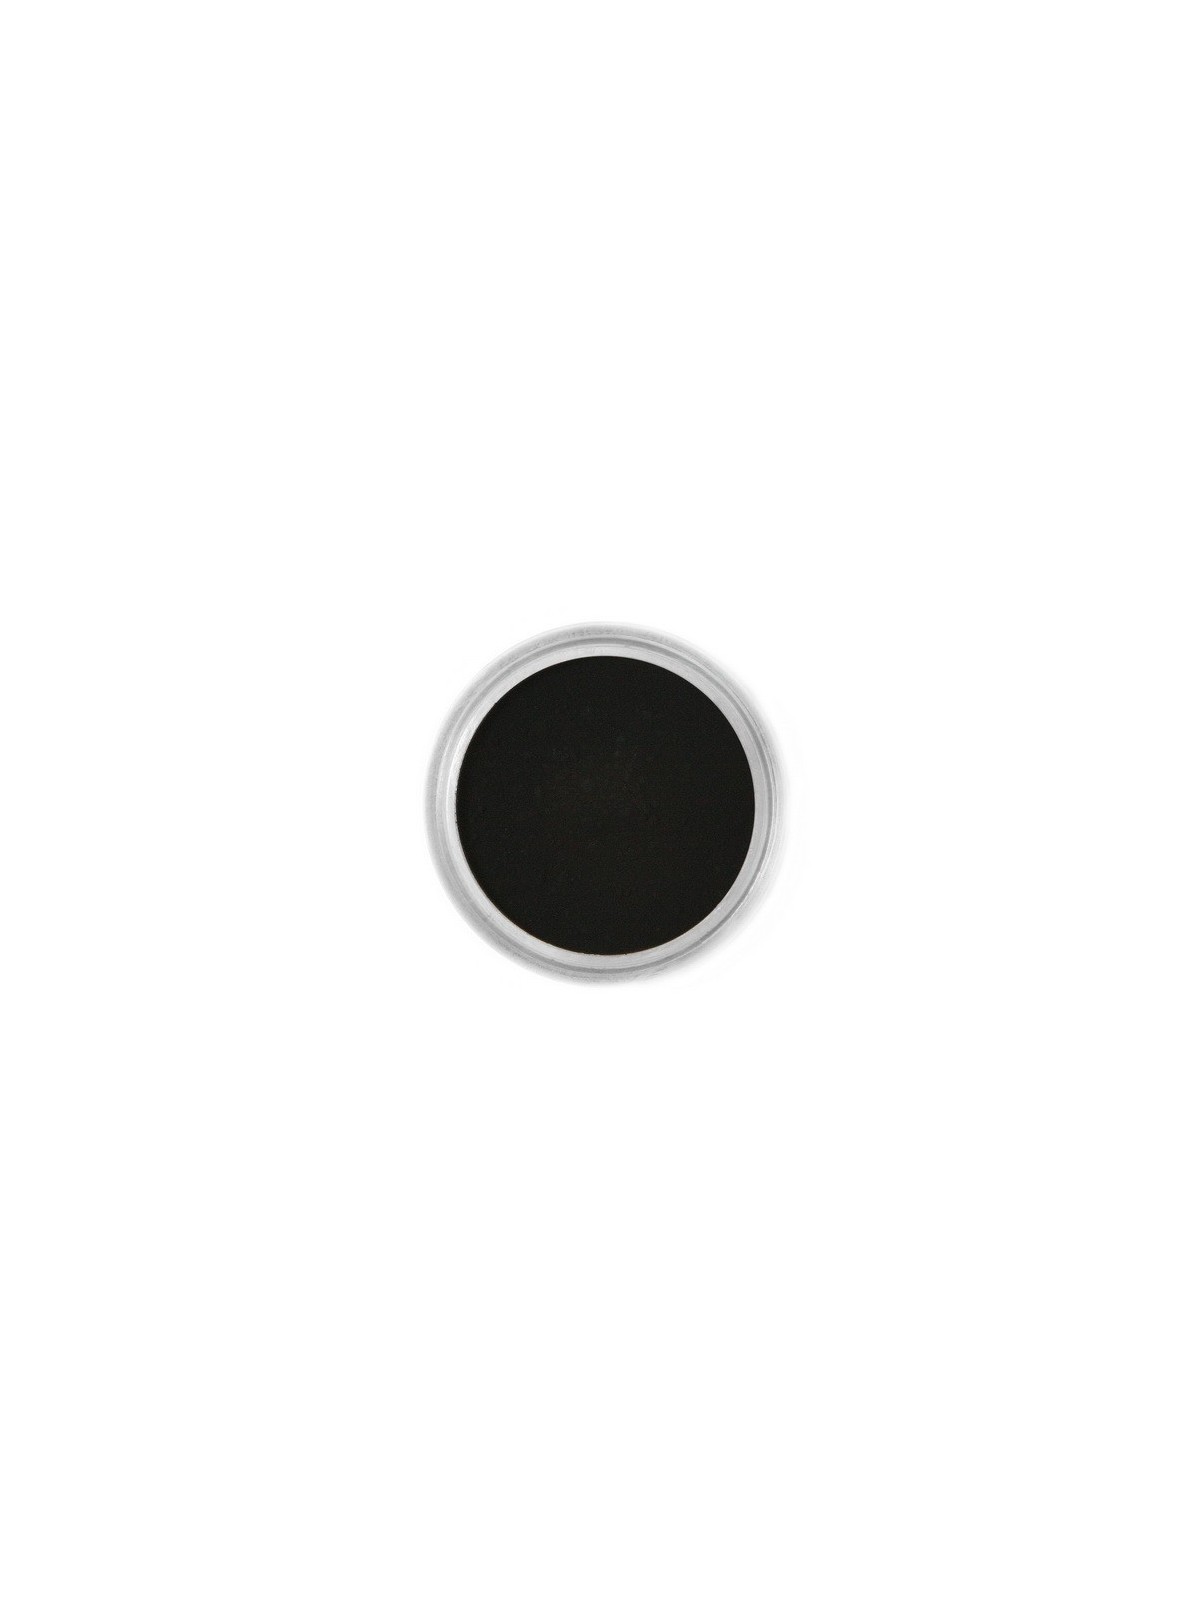 Jedlá prachová farba Fractal - Black, Fekete (1,5 g)